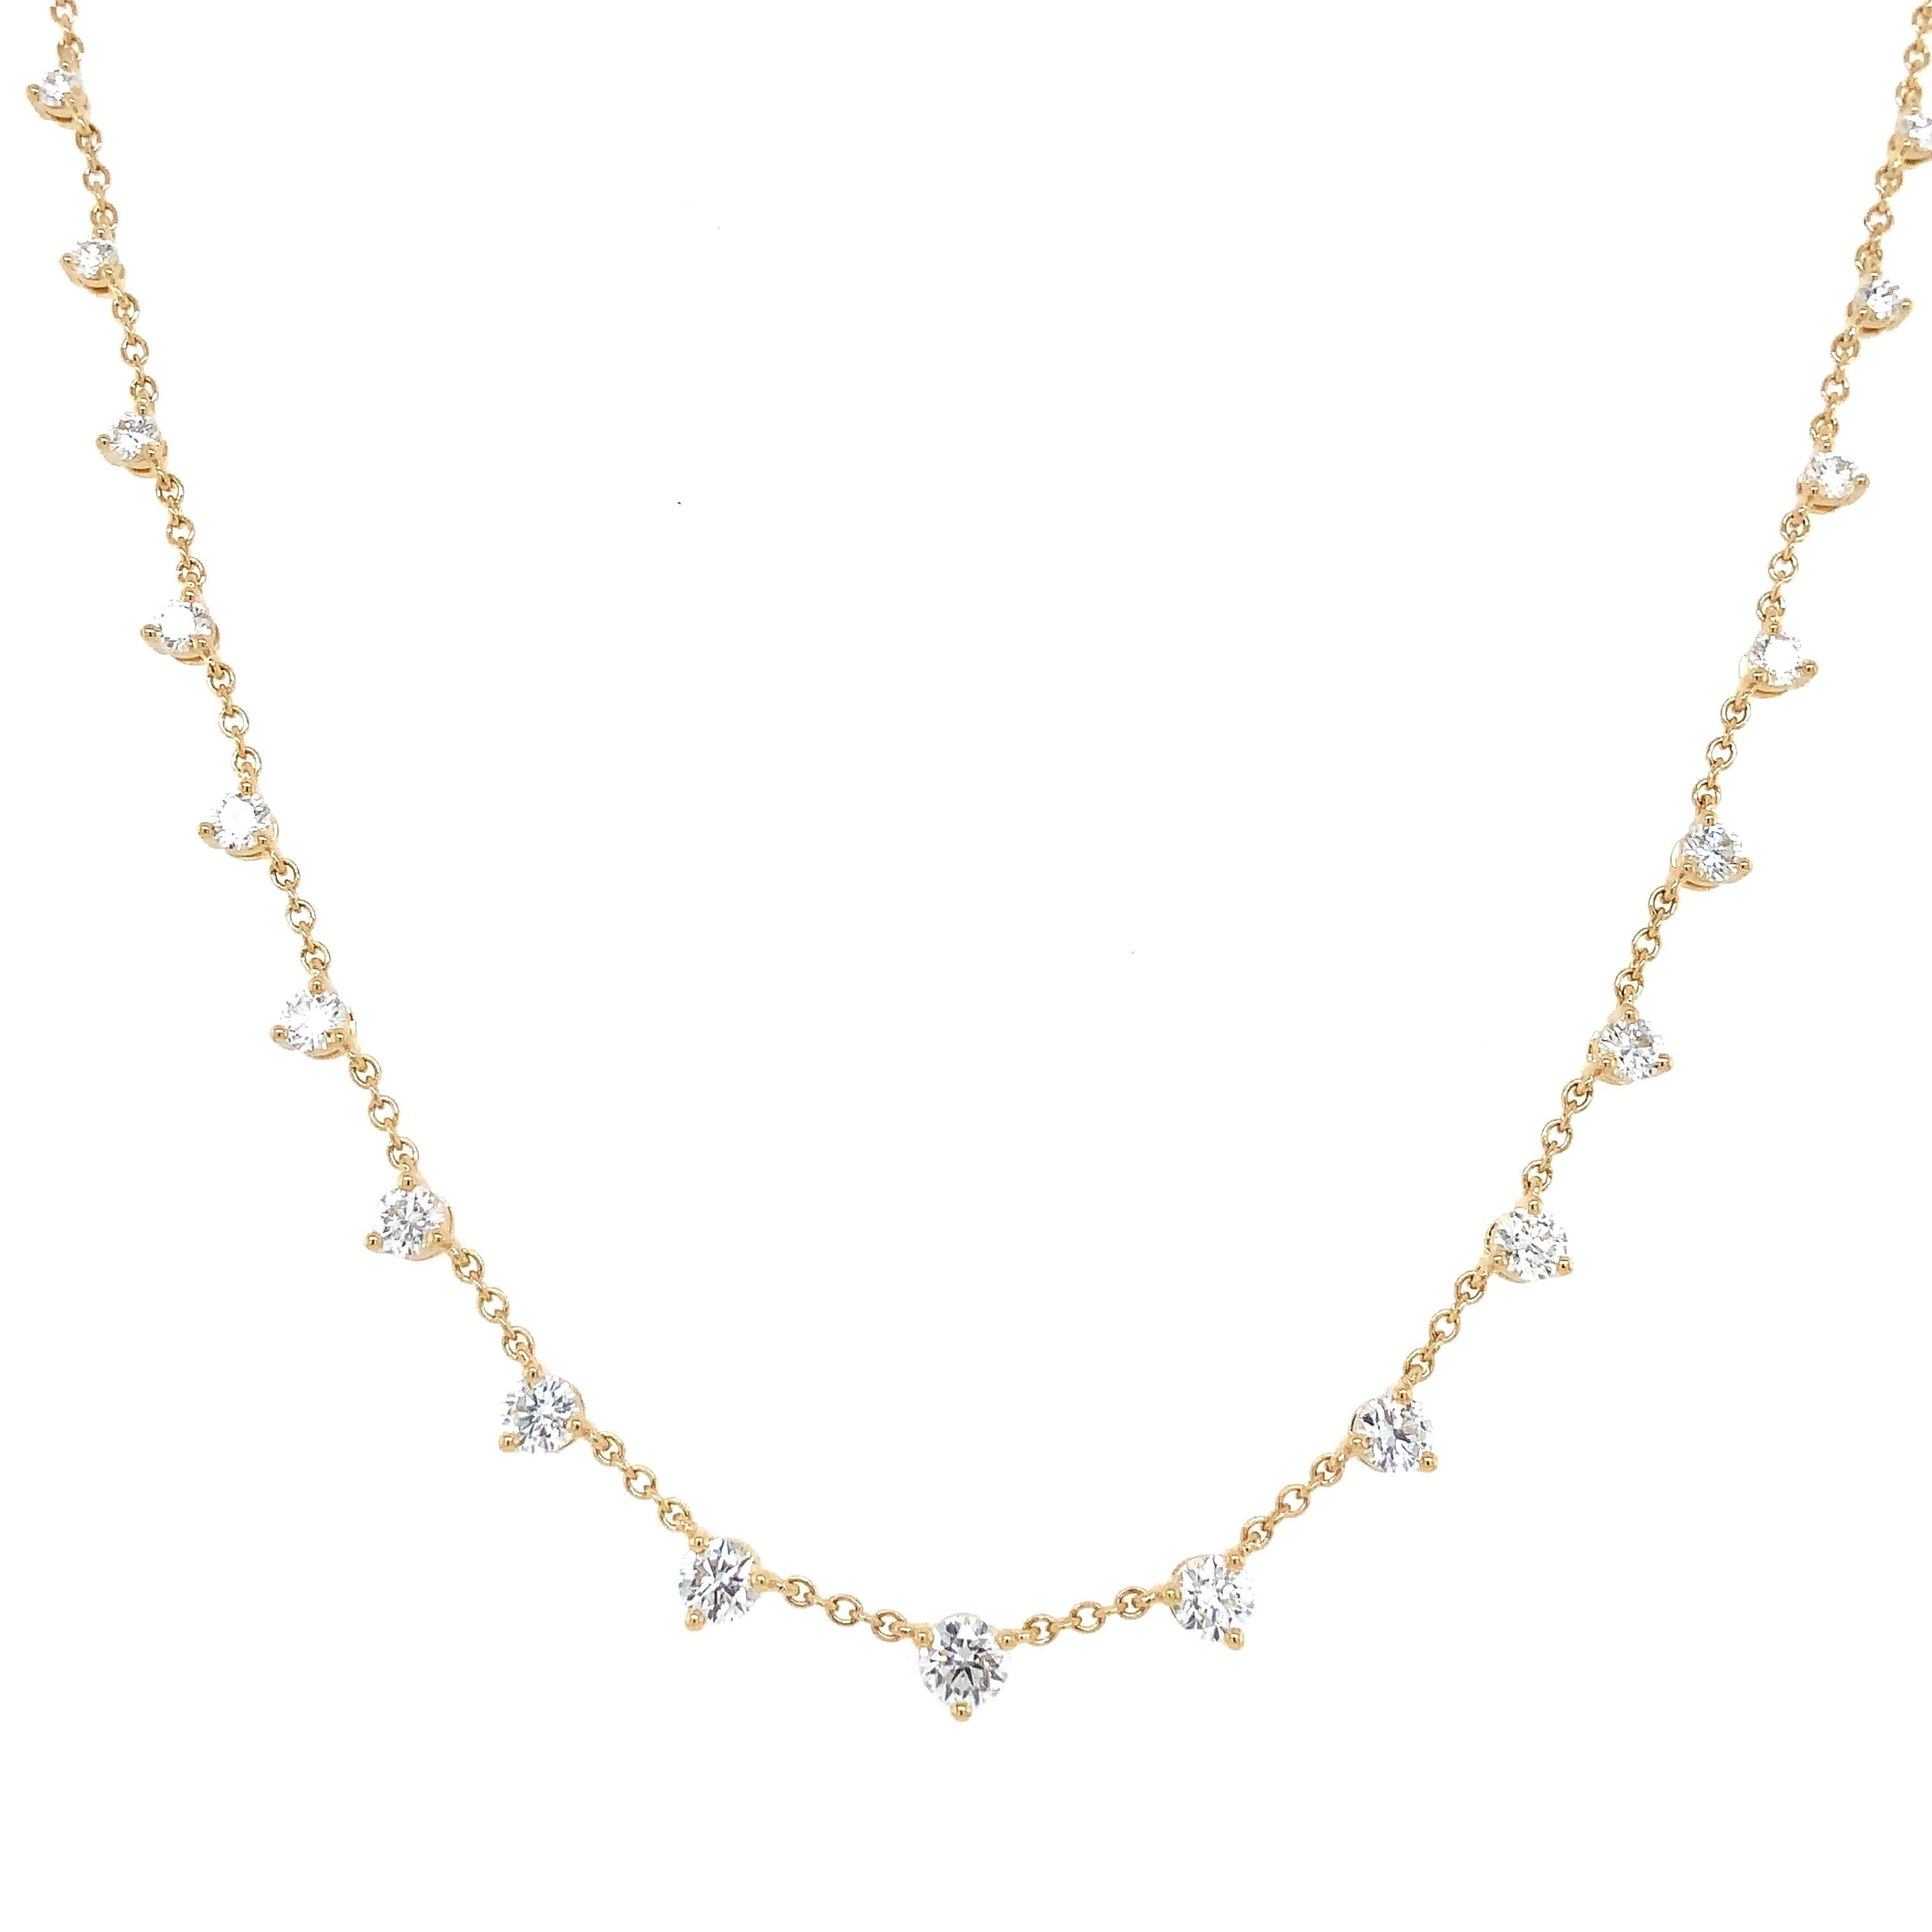 Die Memoire Essential Collection 3 Prong Graduated Diamond Necklace in 18K Gelbgold verfügt über 21 runde Diamanten im Brillantschliff von 1,18ct. tw. mit der Farbe F-G und der Reinheit VS1. Es ist 18